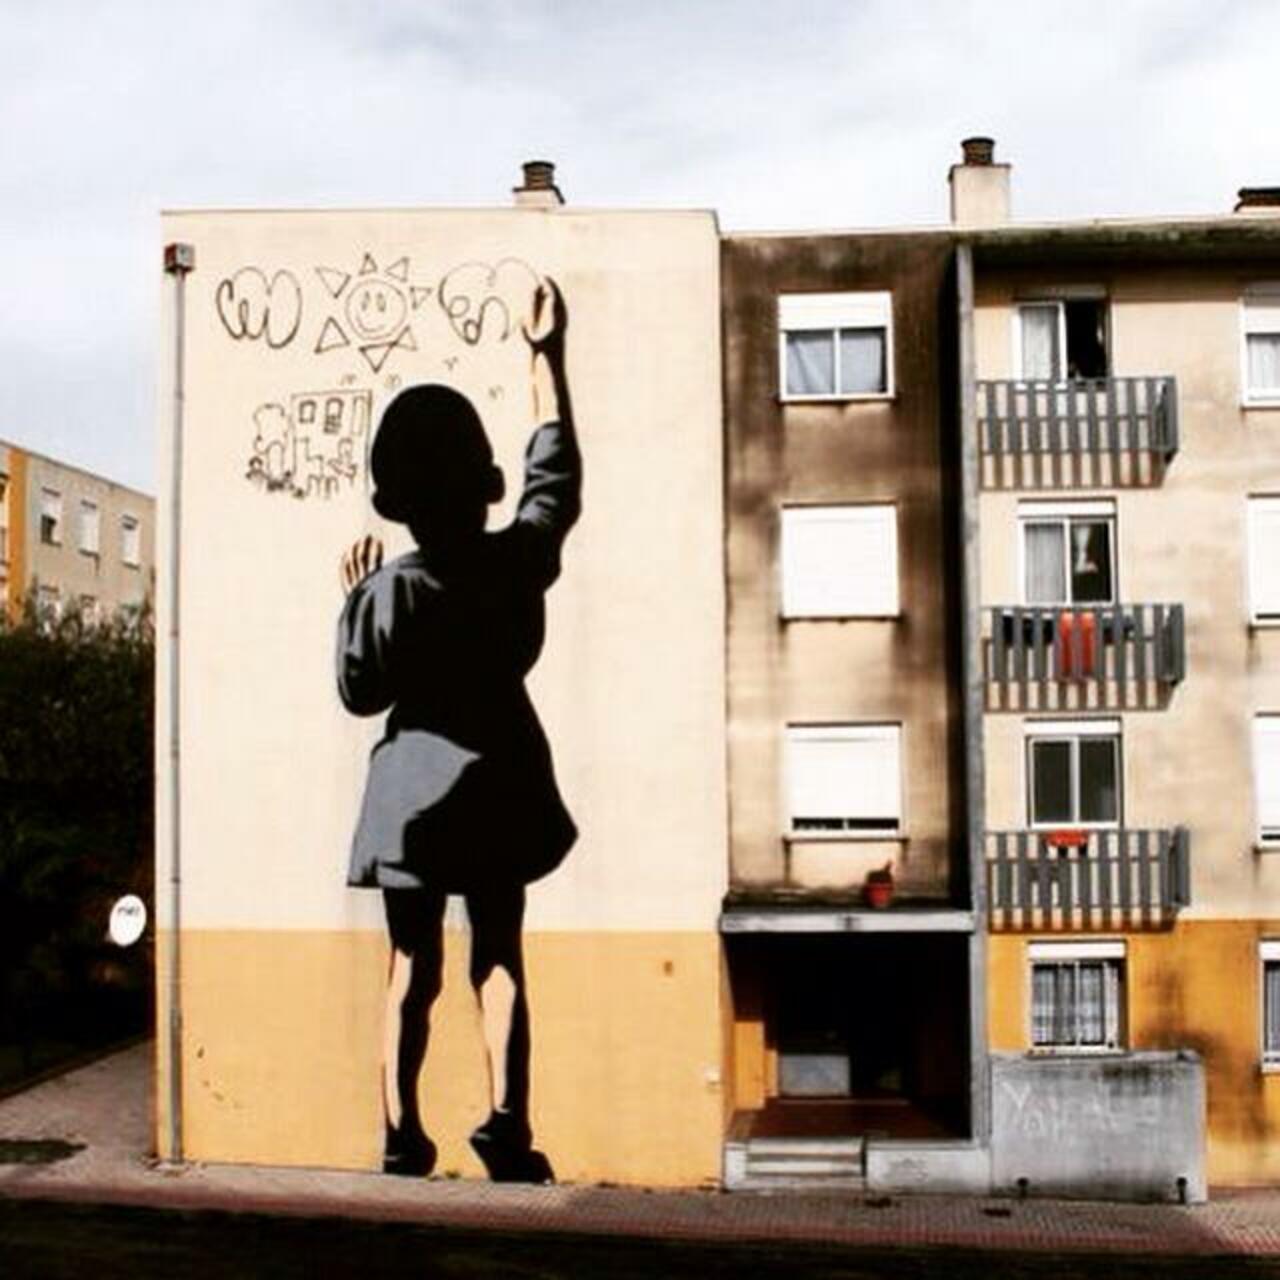 Adres #sprayart #stencil #graffiti #urbanart #Mural #murales #streetart http://t.co/AvFnIYRts9